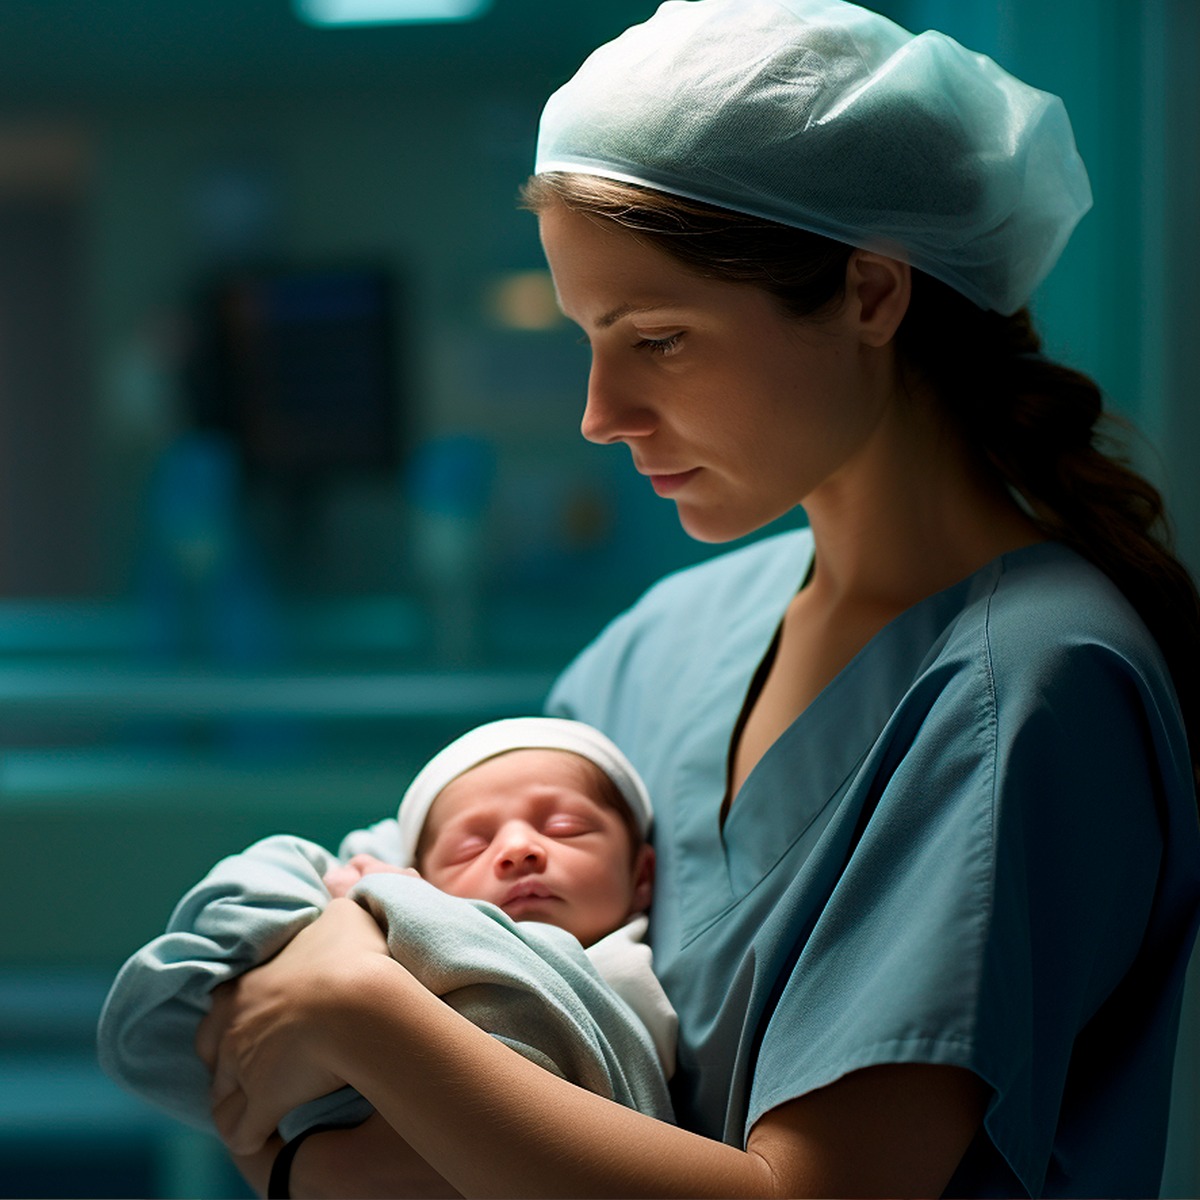 Nati prematuri: SINPIA, in Italia 1 bambino su 10 nasce pretermine